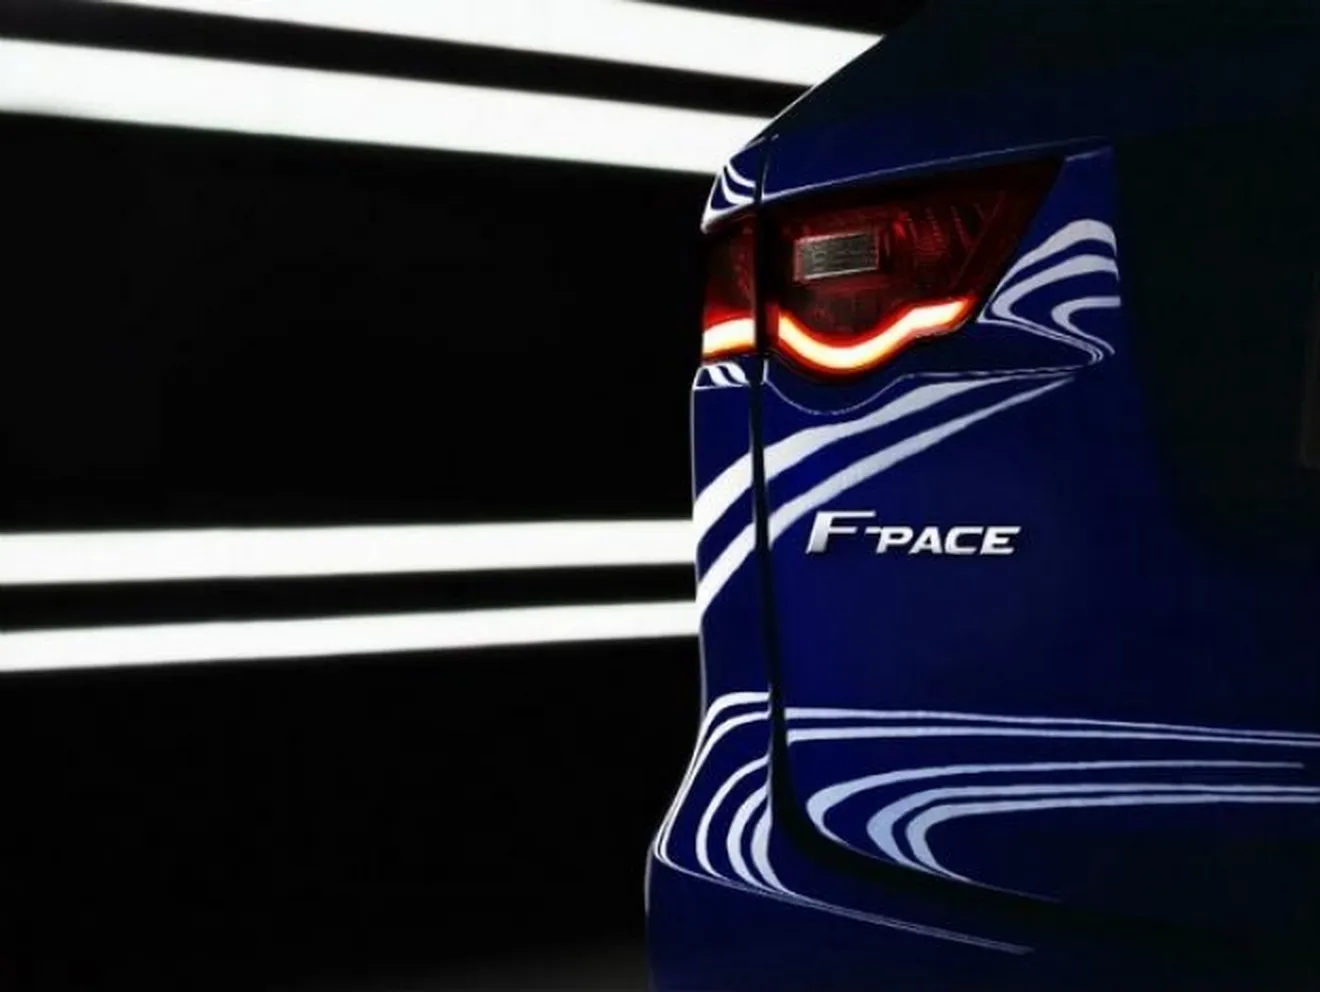 Jaguar F-Pace 2016, confirmado el nombre del primer SUV de la marca inglesa (con vídeo)